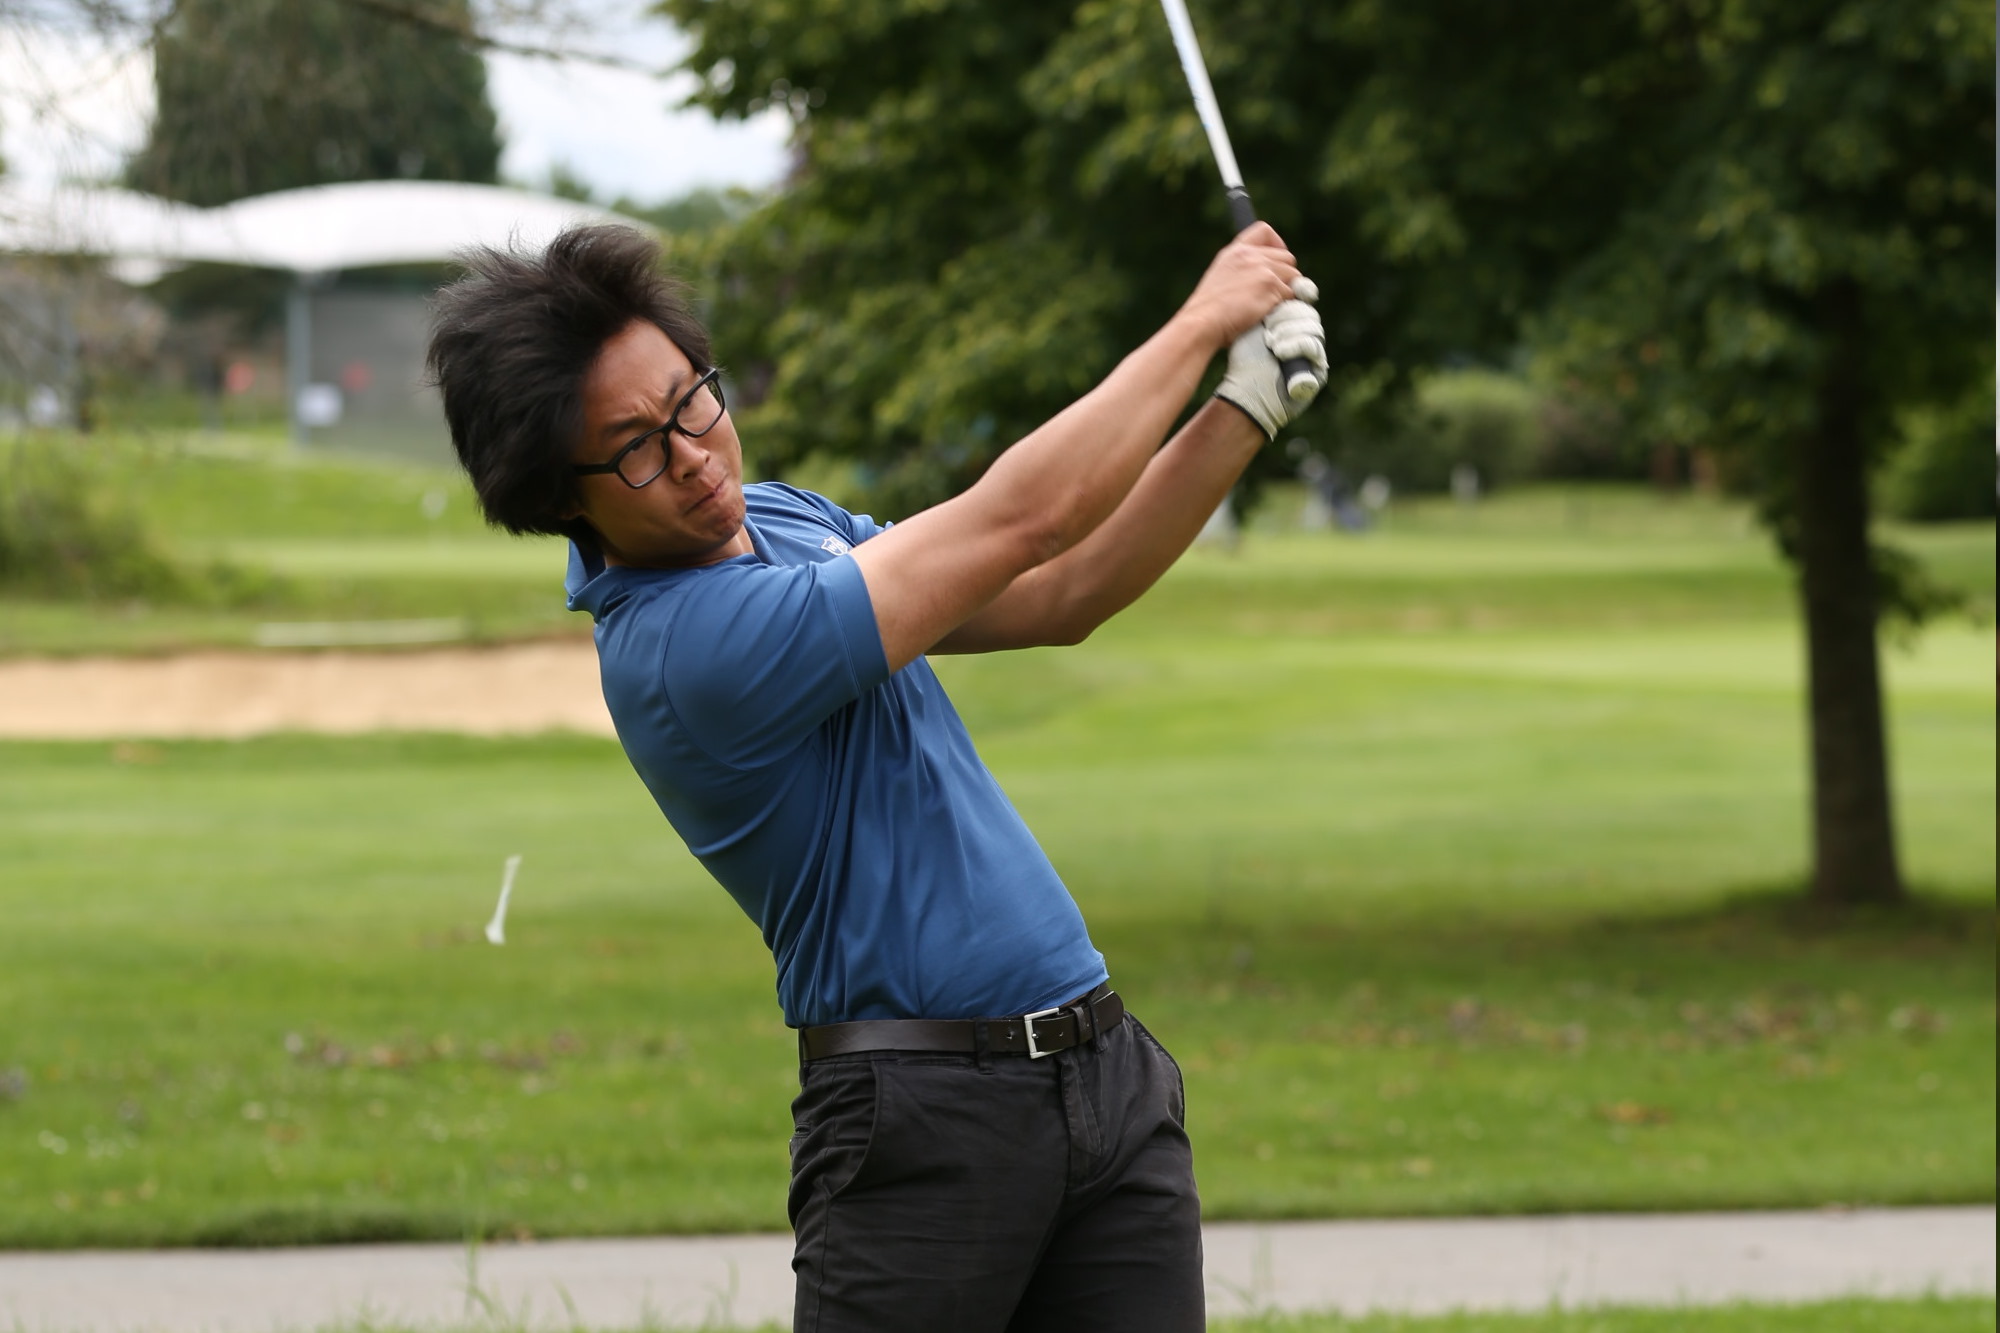 Image de la formation de golf : Apprendre à analyser son swing